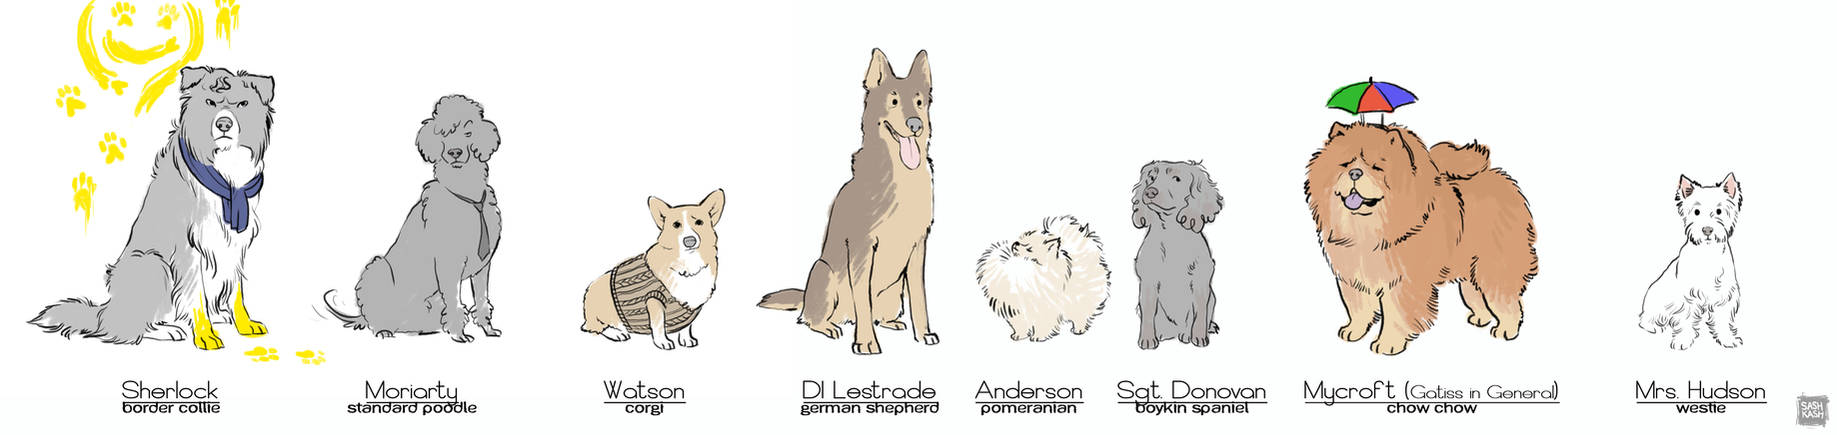 Sherlock Dogs